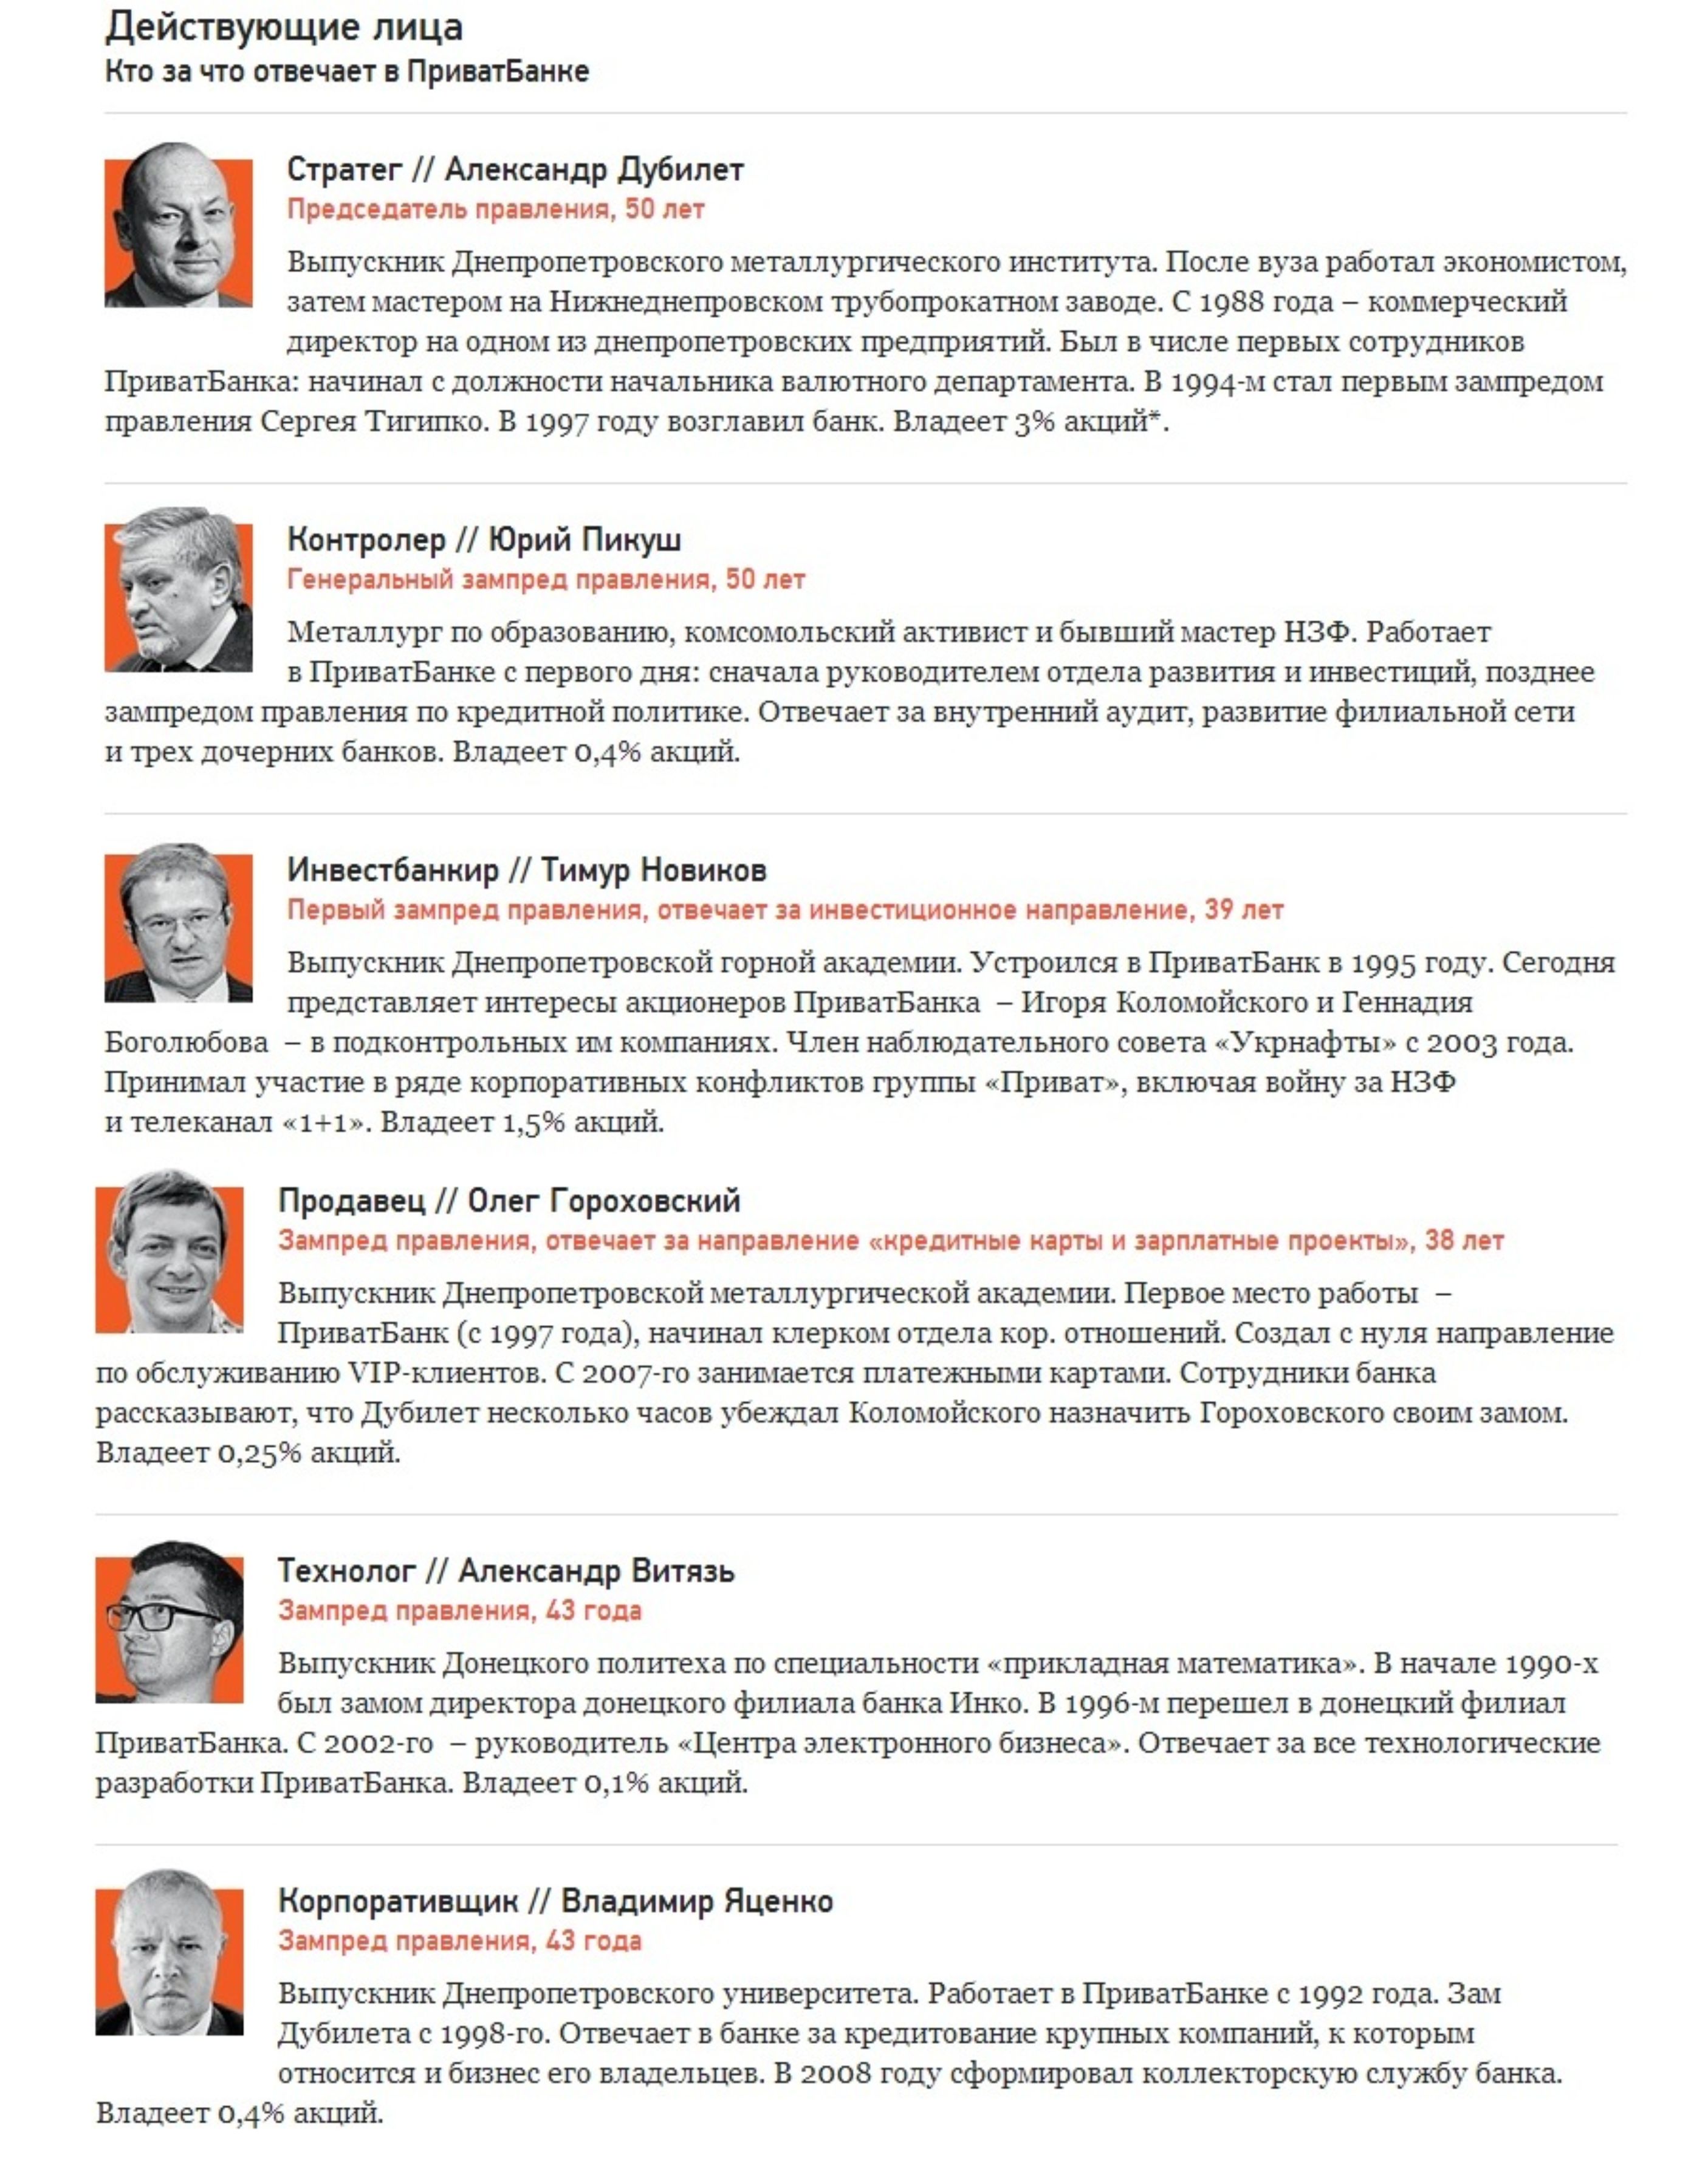 Житомир.info: Сегодня в Приватбанке обслуживается треть украинцев. Как этот днепропетровский банк стал крупнейшим в стране, разузнал Forbes.